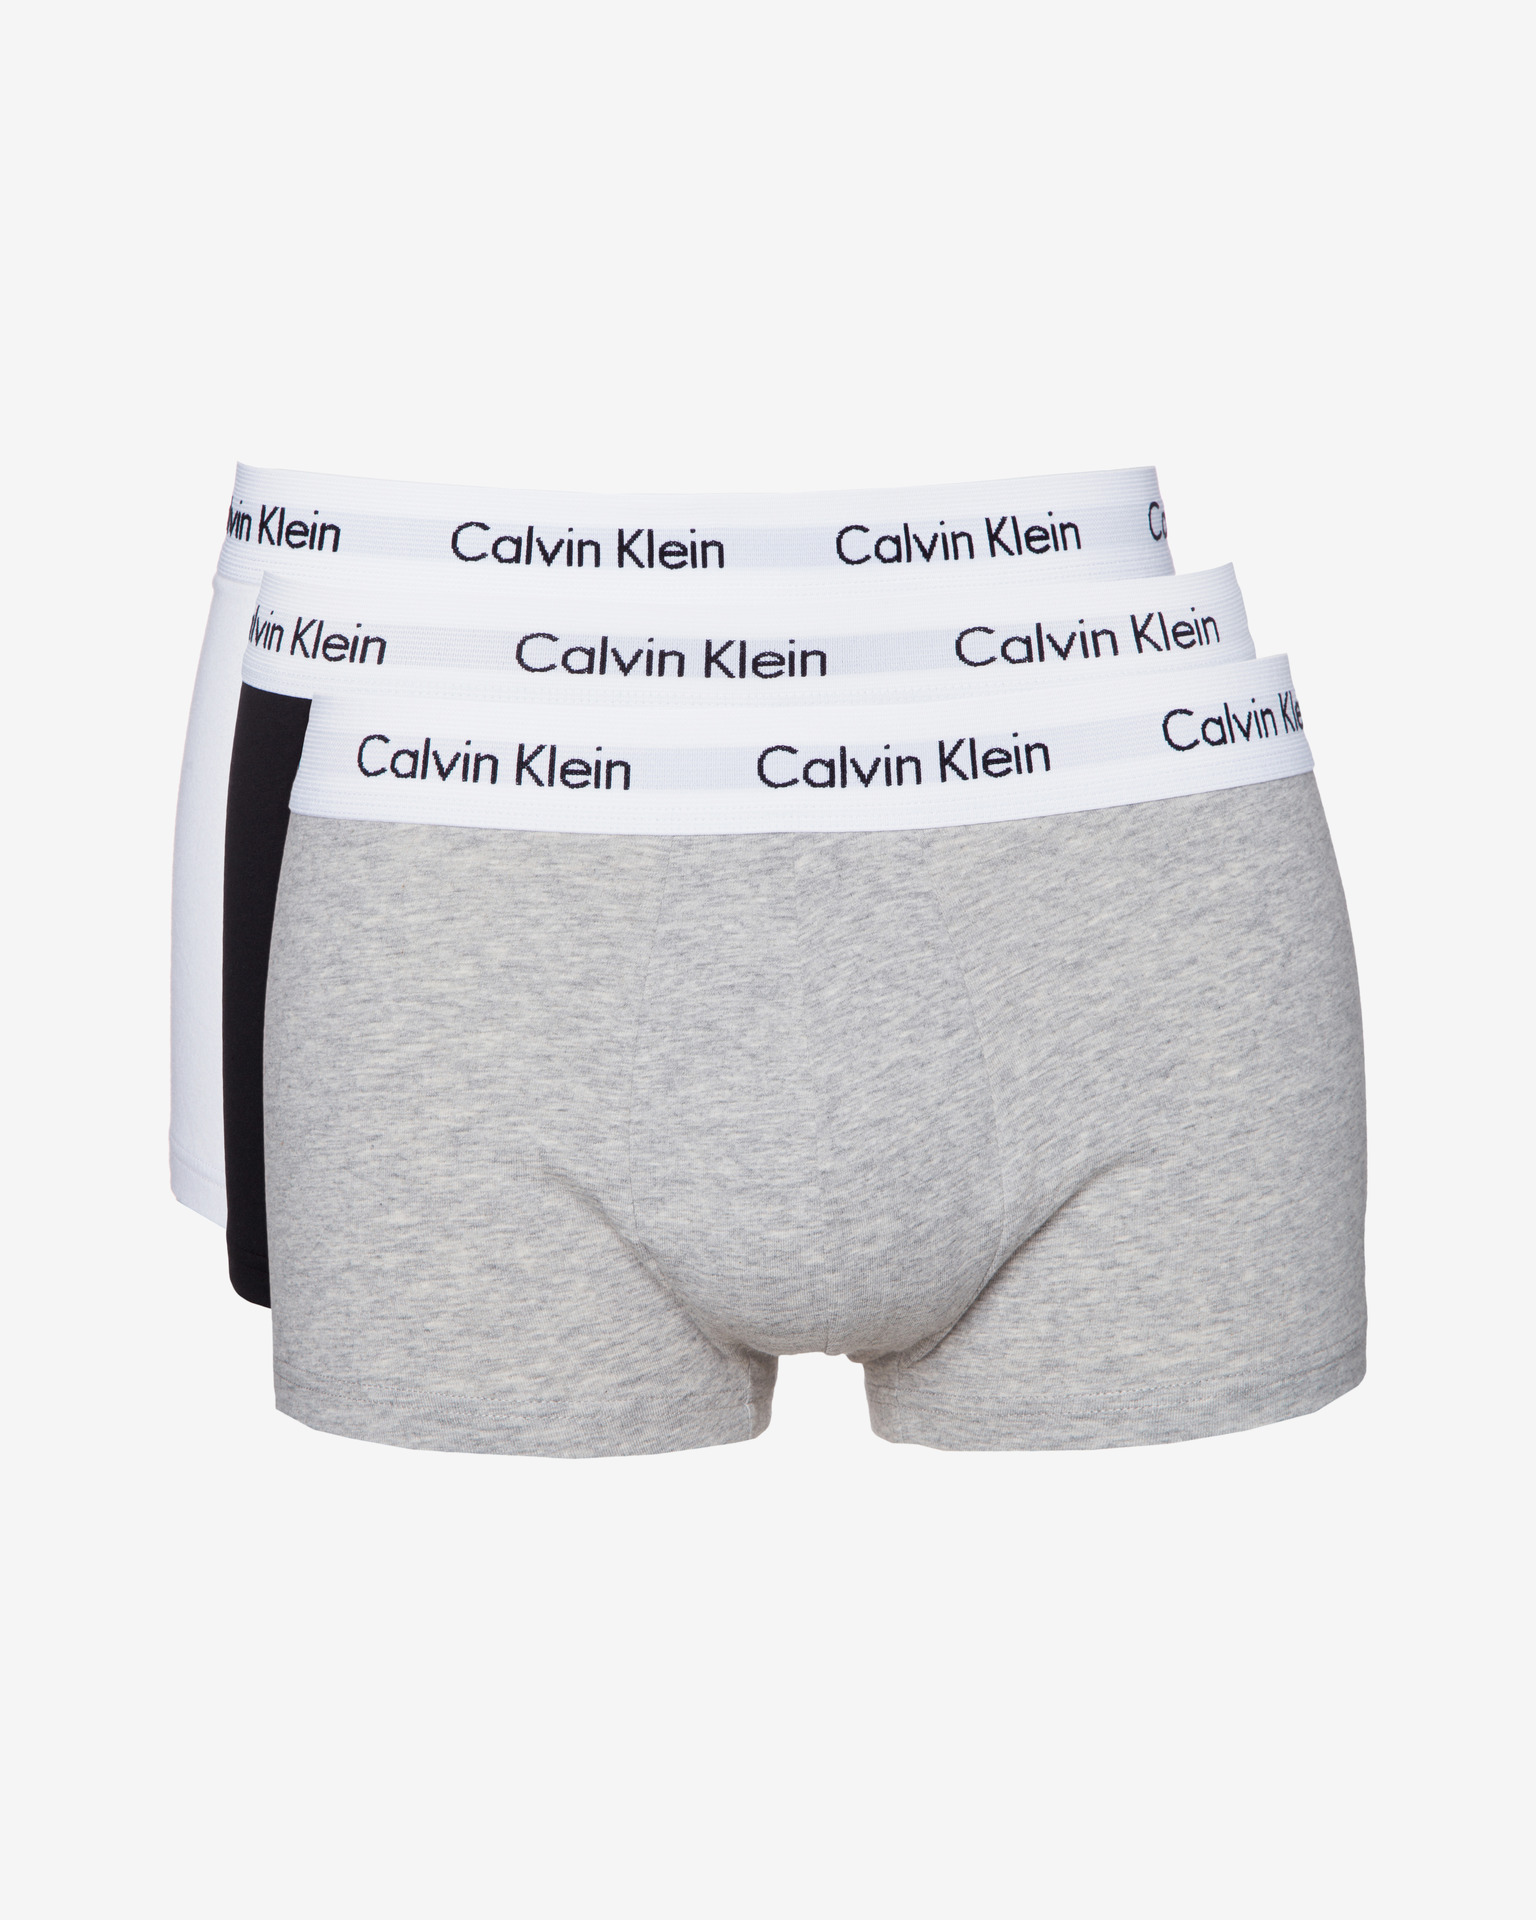 gray calvin klein boxers